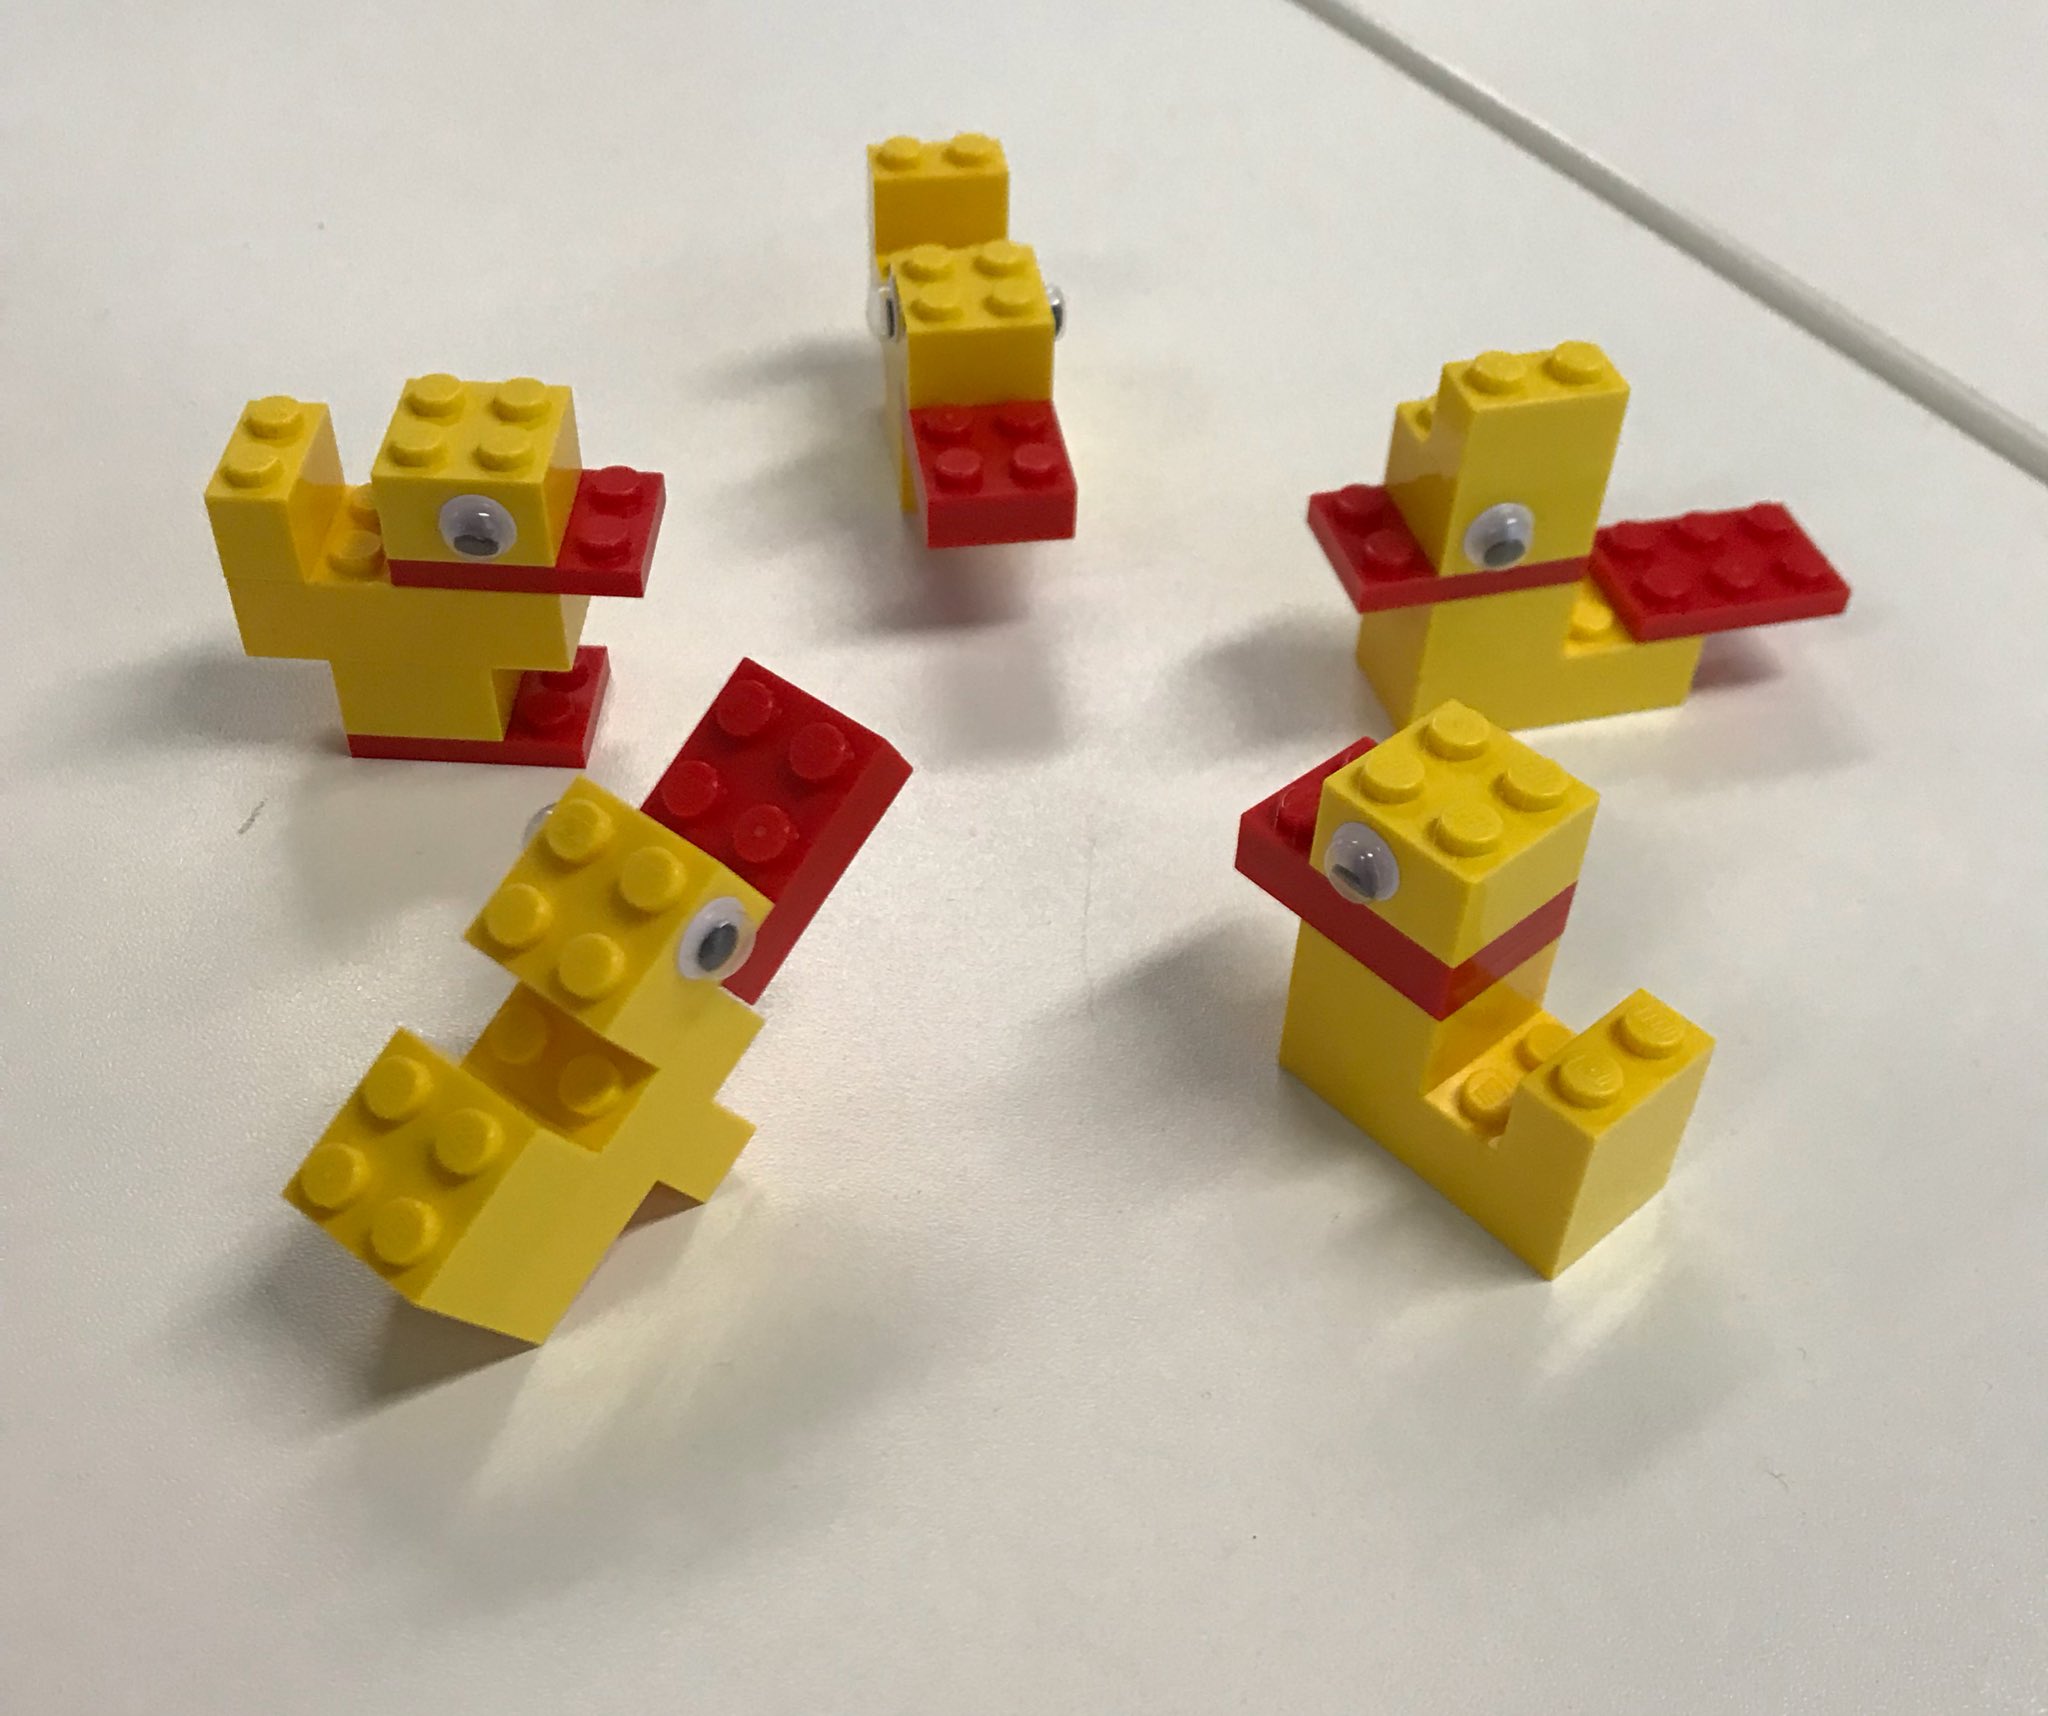 Table of ducks #SocMedHE17 #seriousplay #lego https://t.co/VnKd6dQ6vC